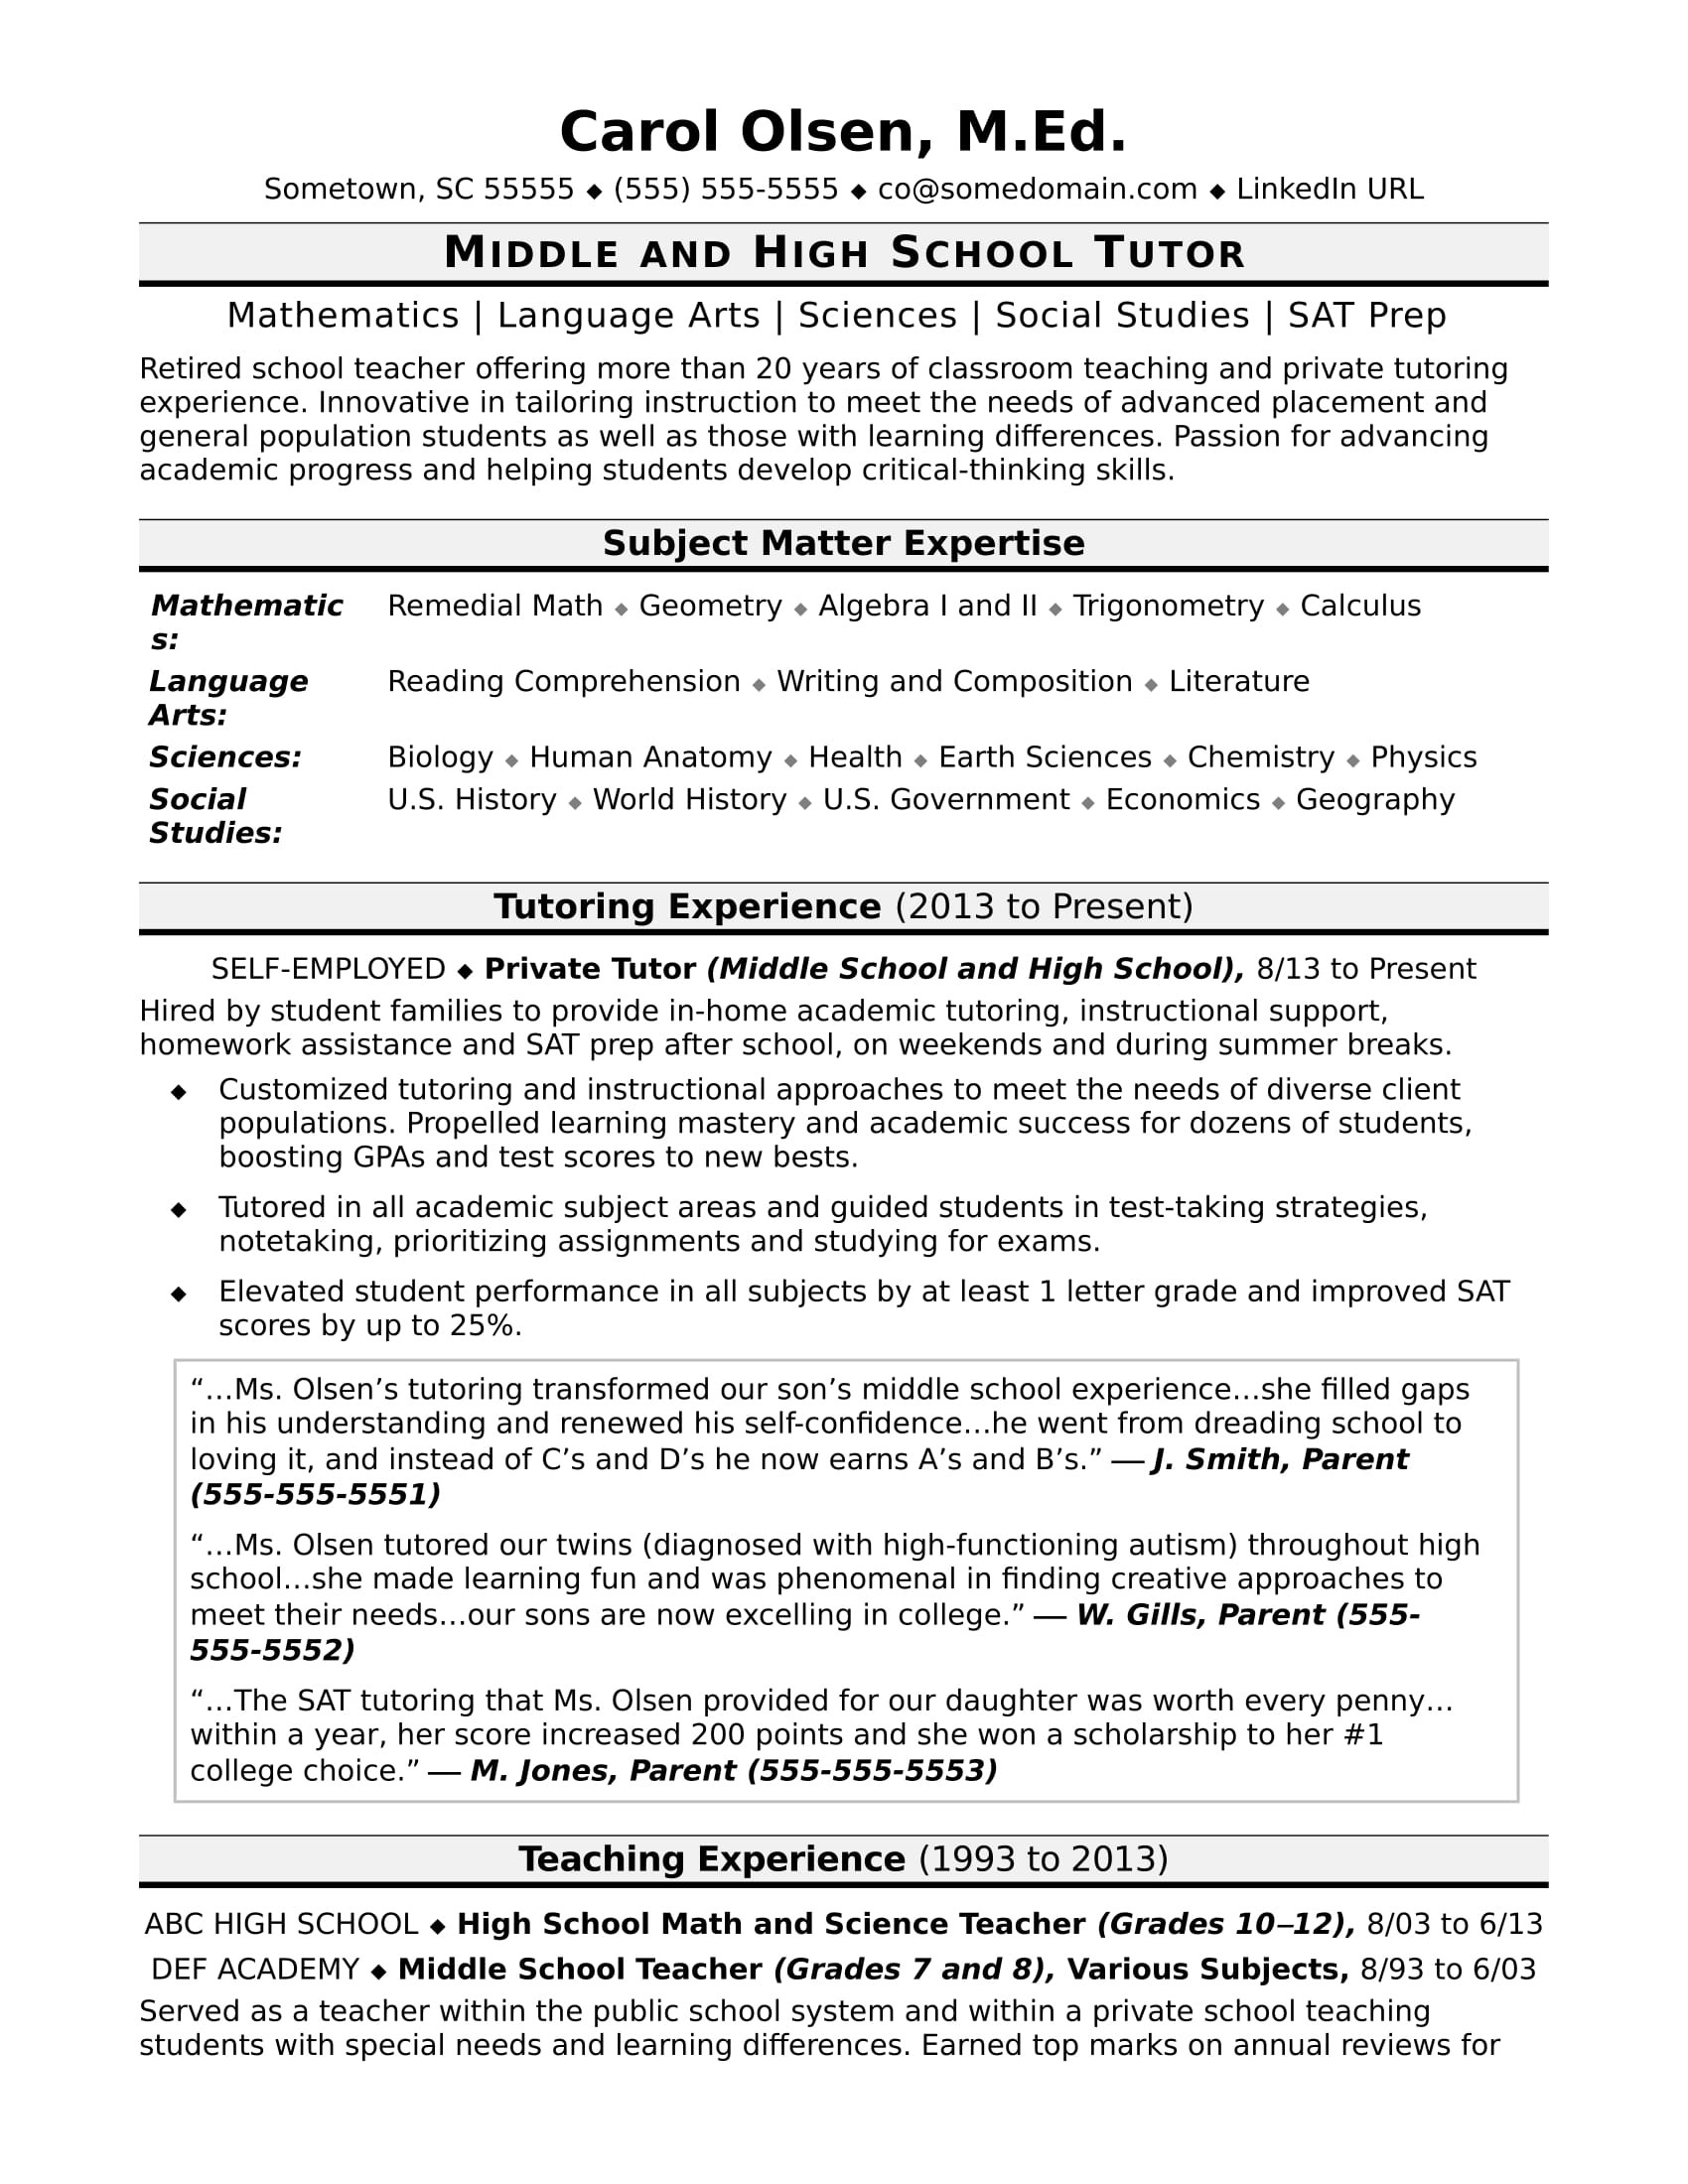 Sample High School Student Resume for Tutoring Job Tutor Resume Monster.com